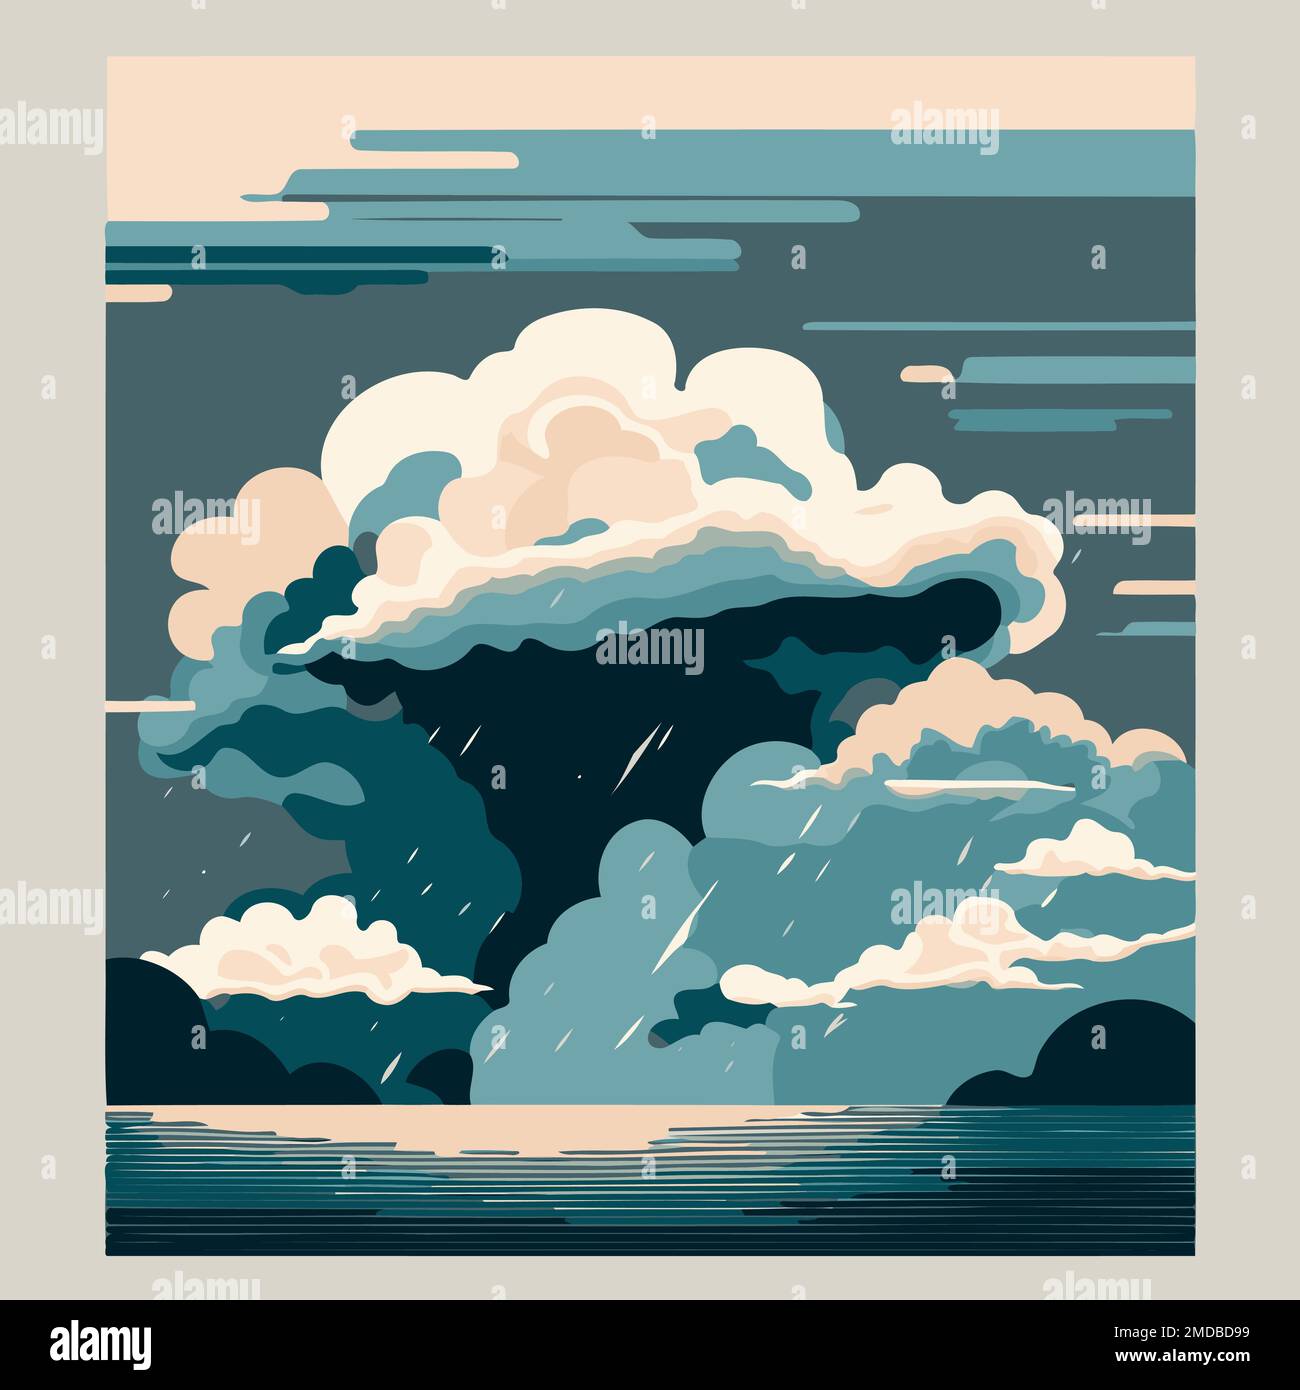 illustrazione delle nuvole di tempesta sul mare che mostra il ciclo dell'acqua fatto per illustrare la giornata mondiale dell'acqua Illustrazione Vettoriale